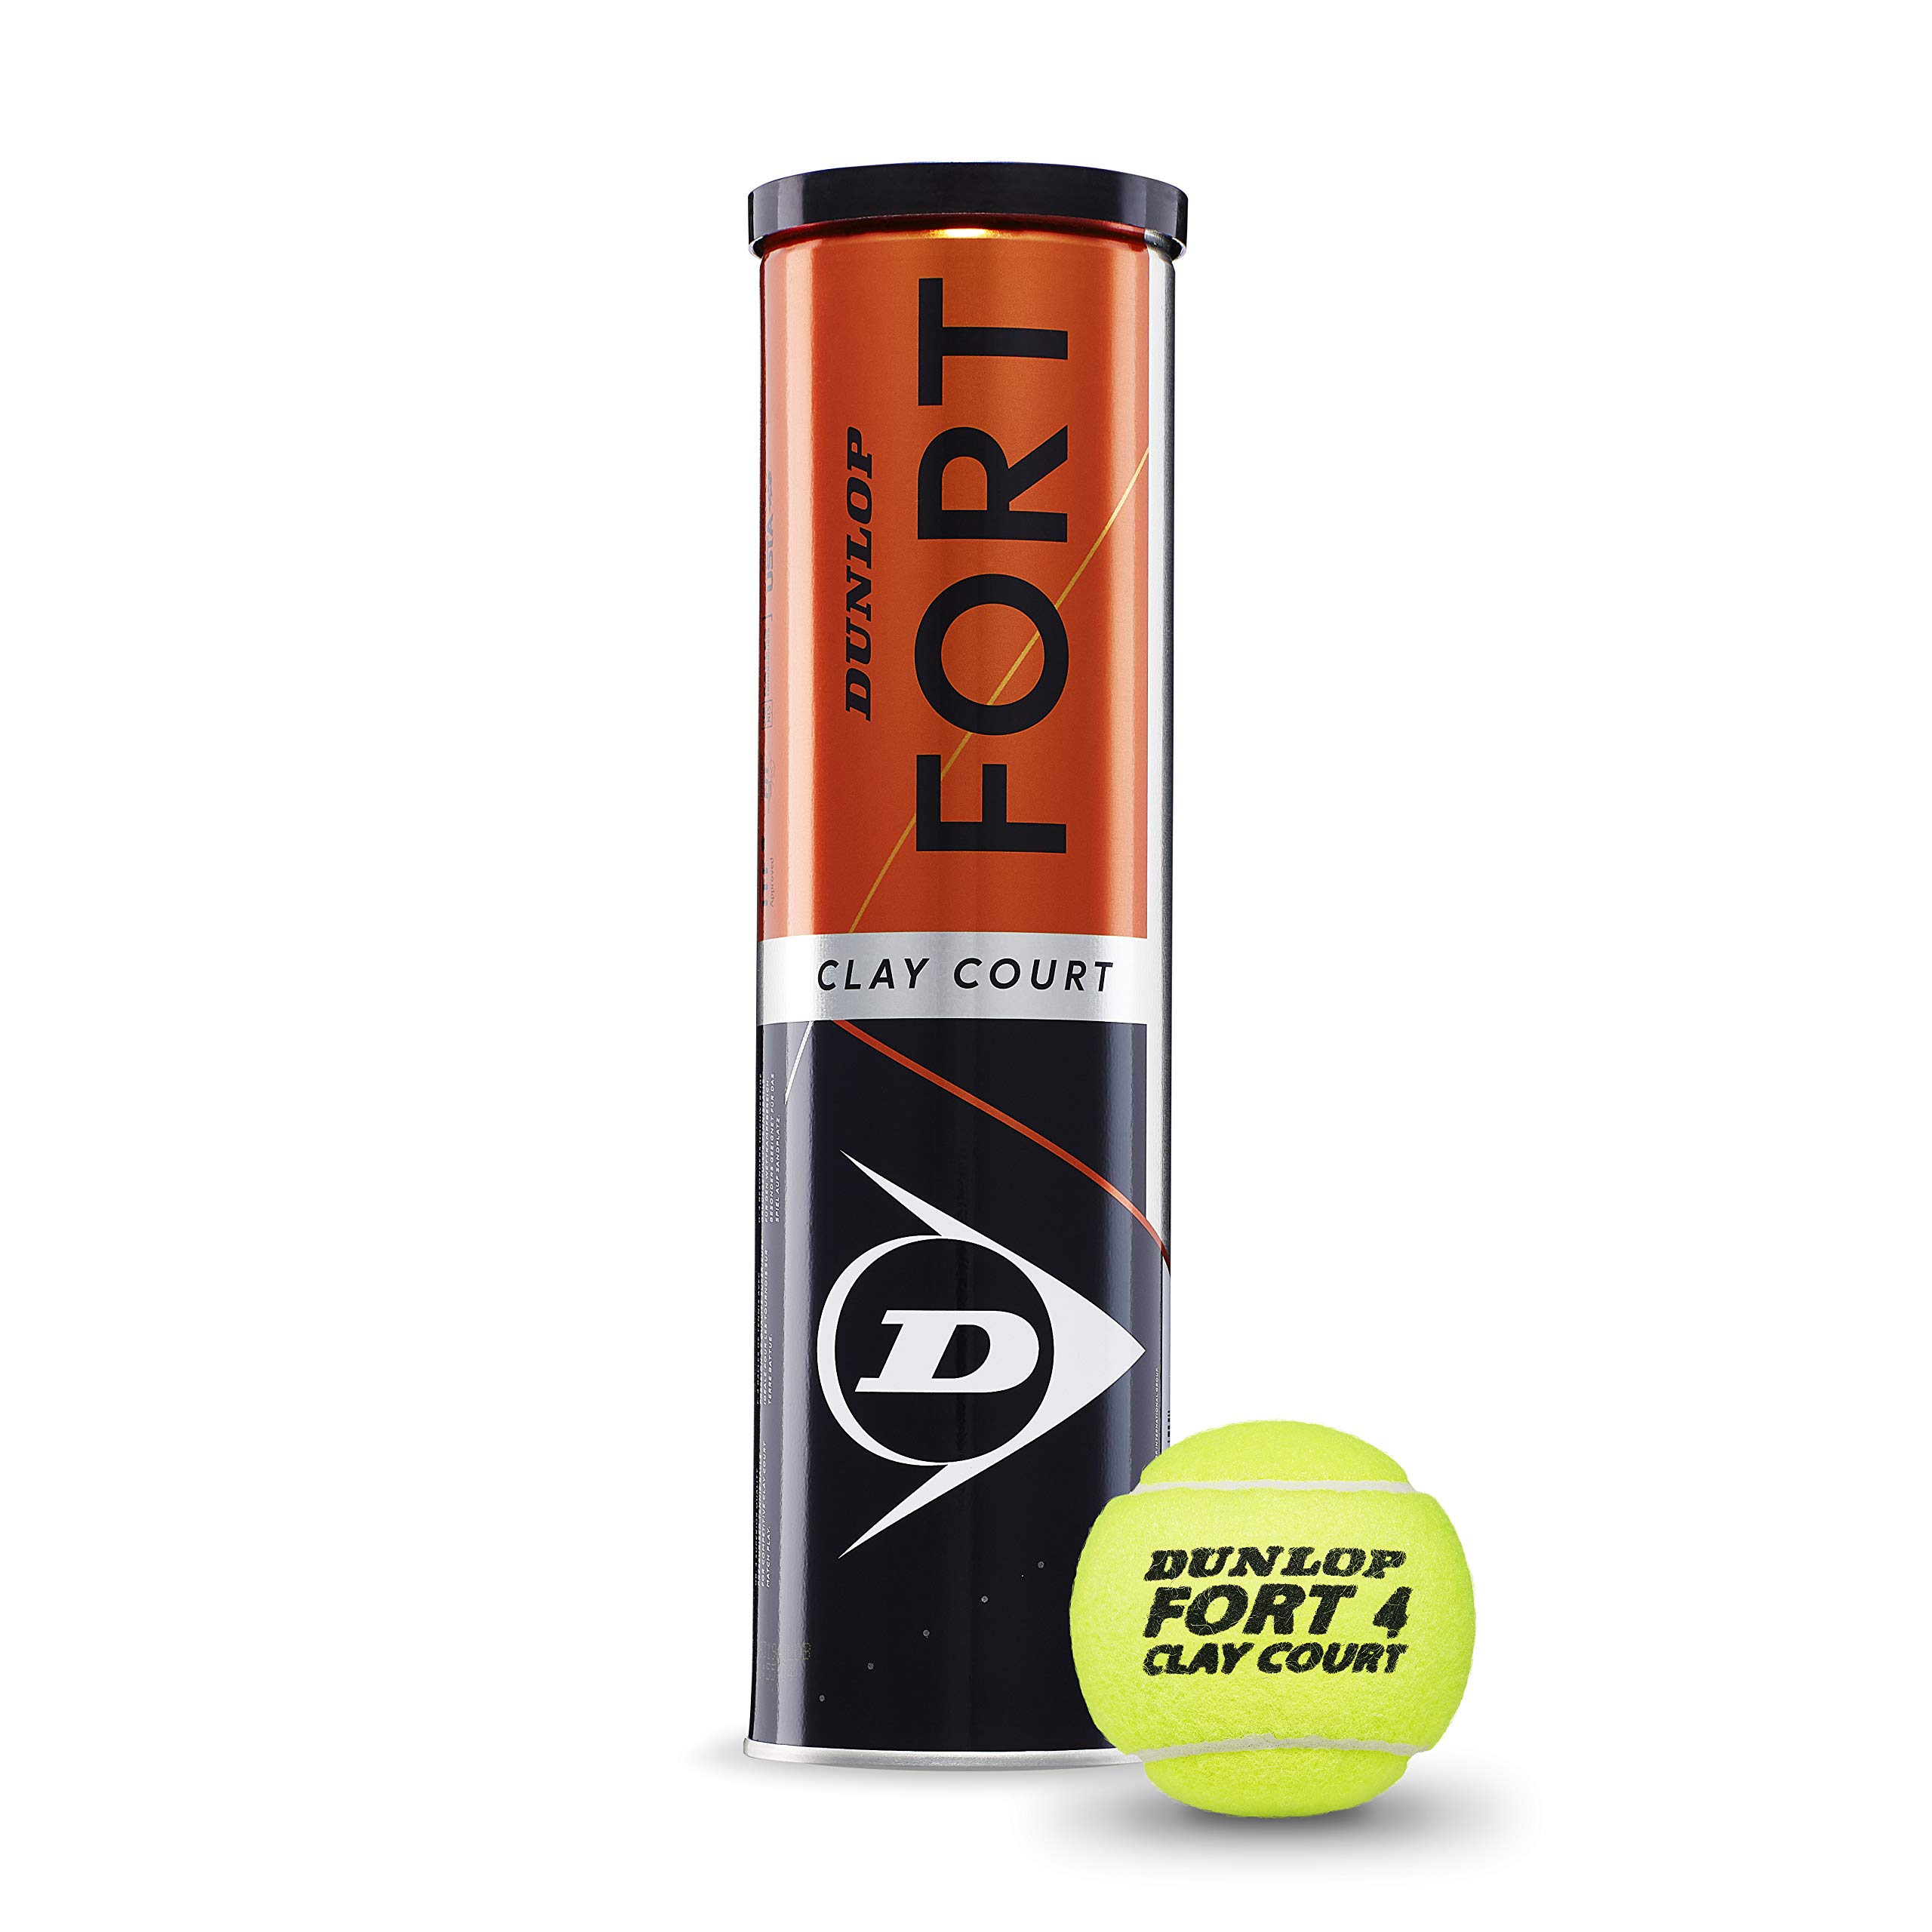 Pas Cher DUNLOP Fort Clay Court balles de Tennis, 4 unités, Unisexe Adulte dGOQg45al Boutique